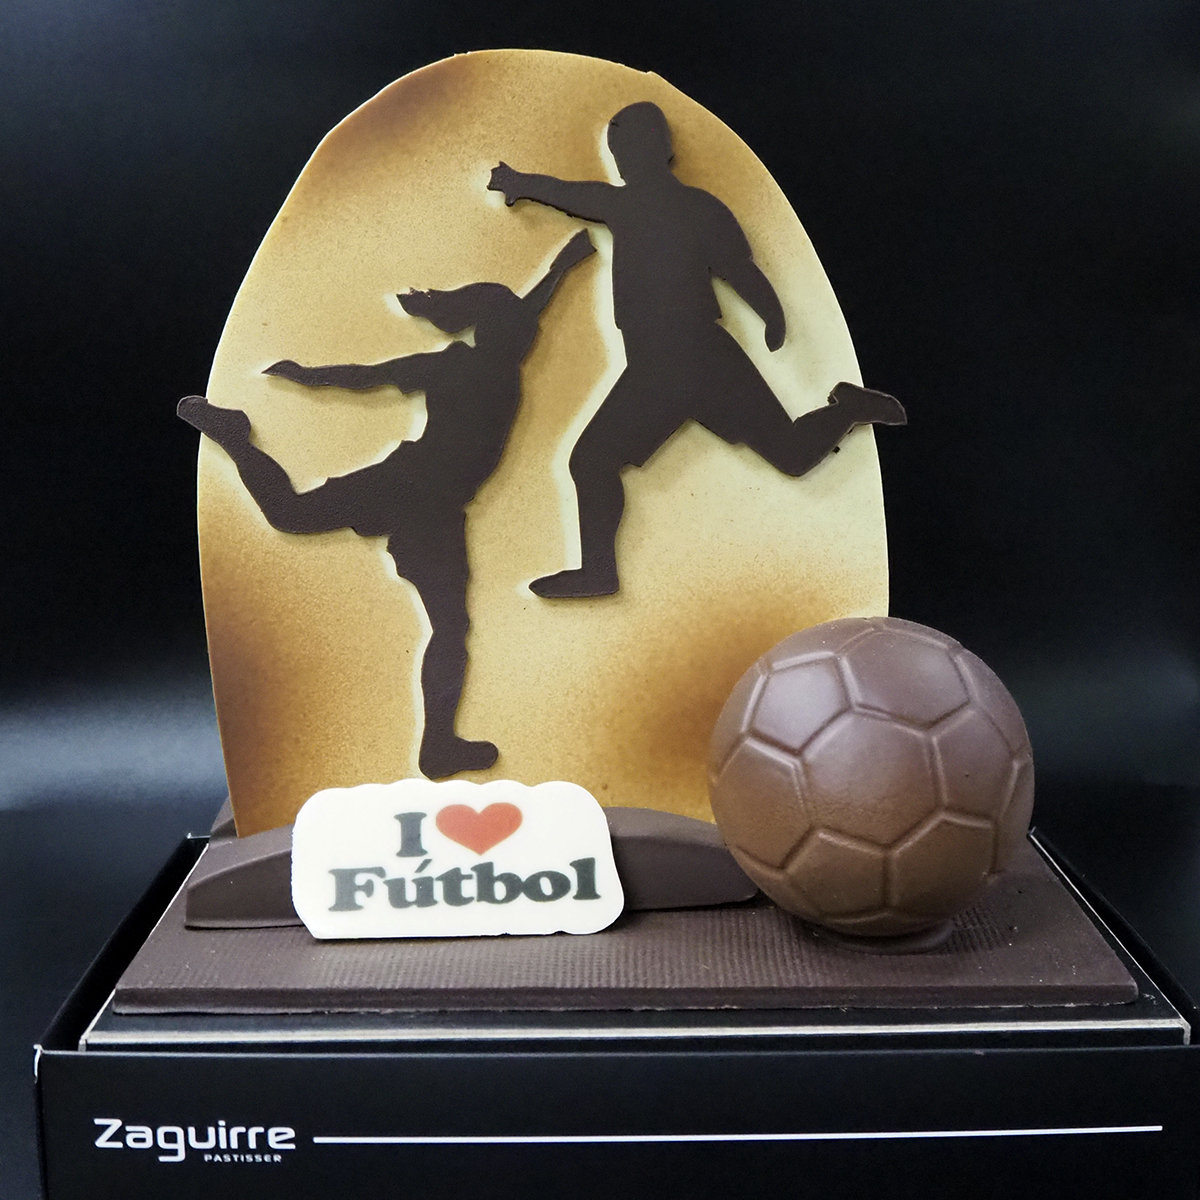 Mona de Pasqua artesanal elaborada per Zaguirre Pastisser amb jugadors de futbol